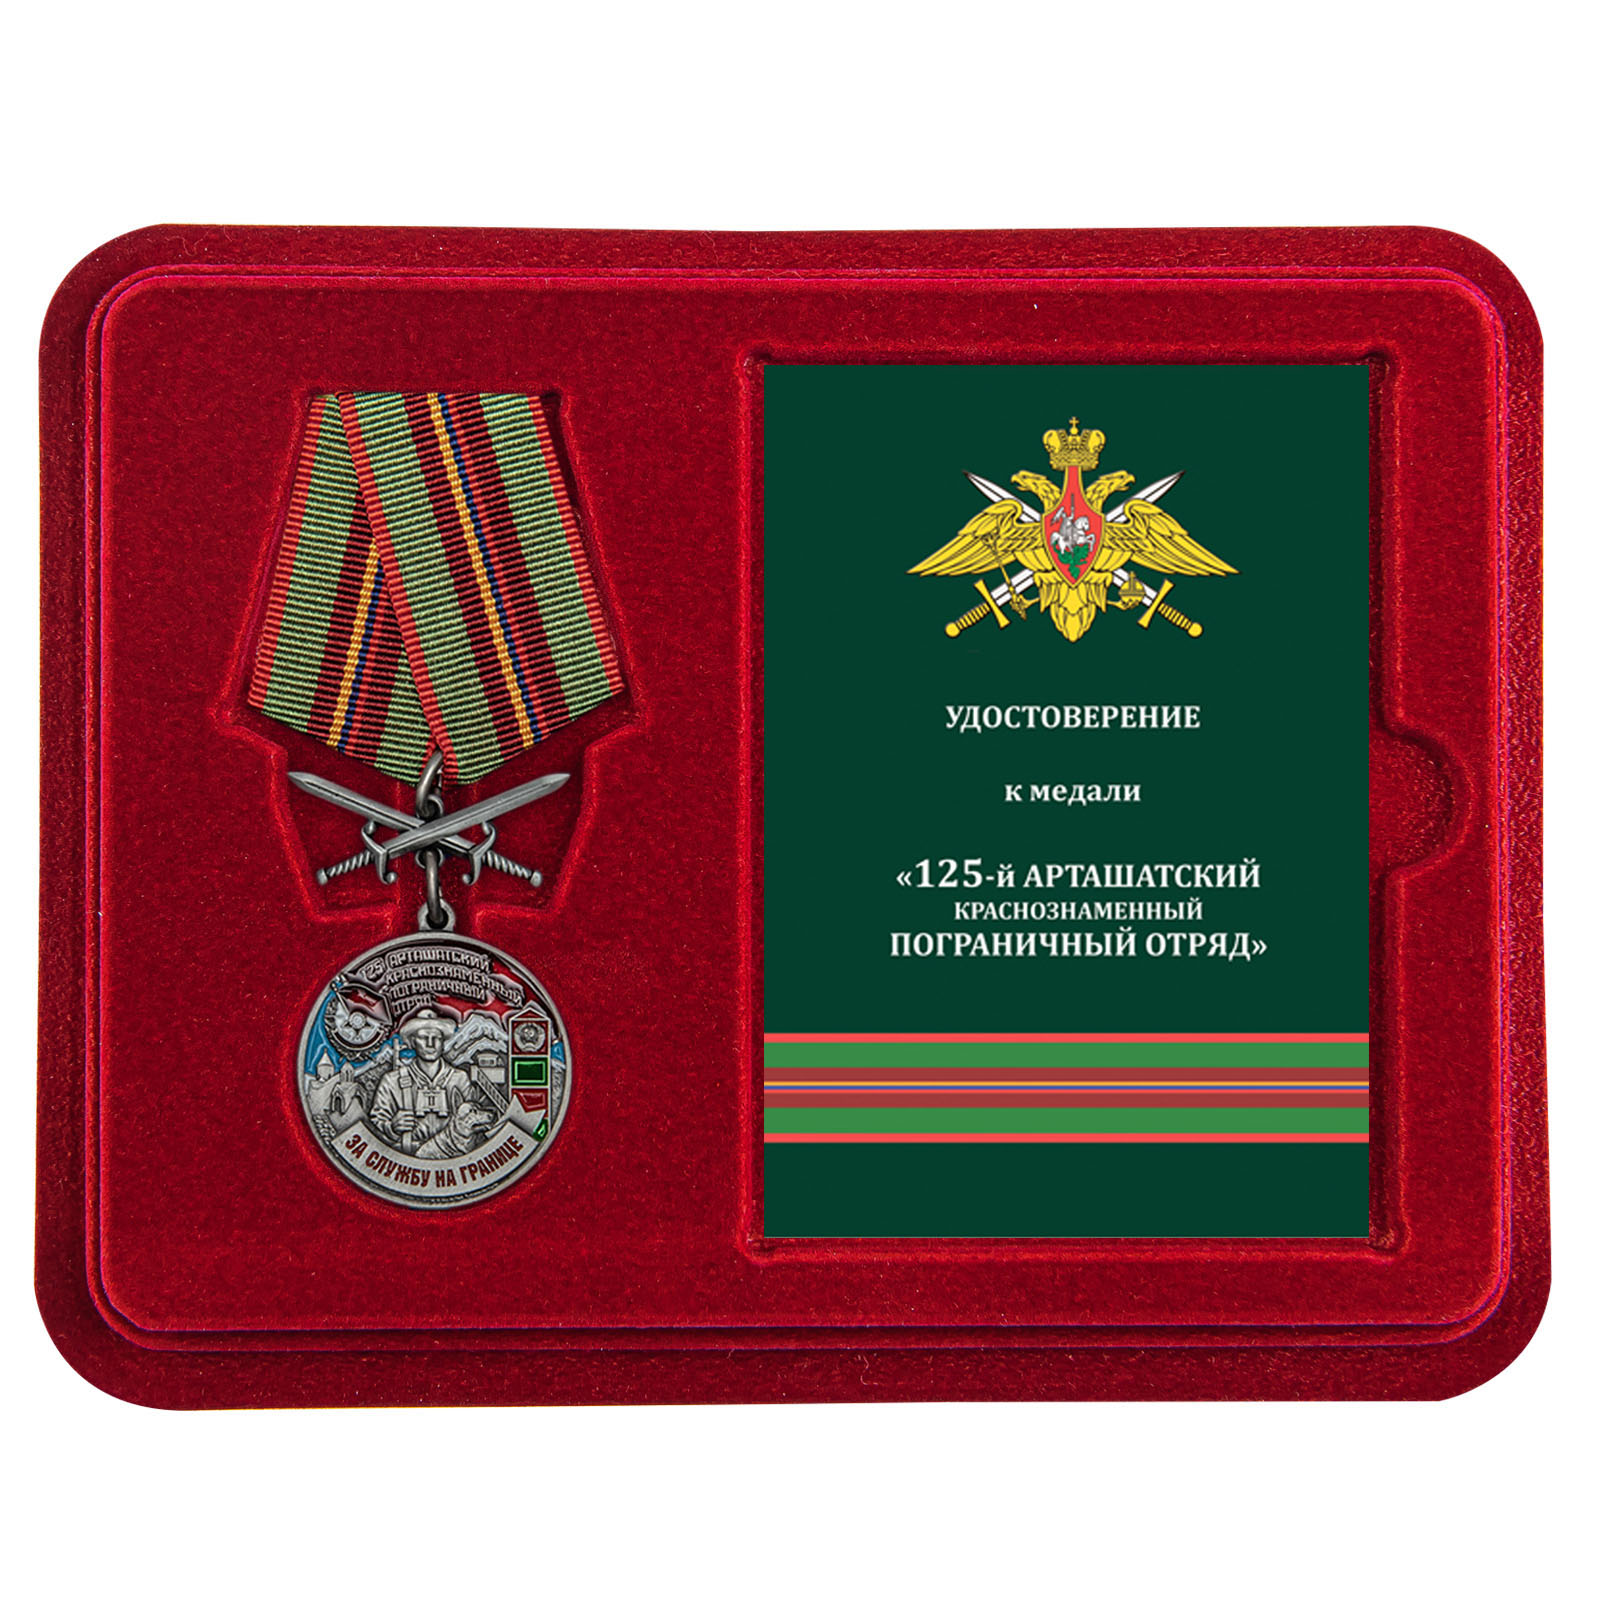 Купить медаль За службу в Арташатском пограничном отряде в подарок выгодно